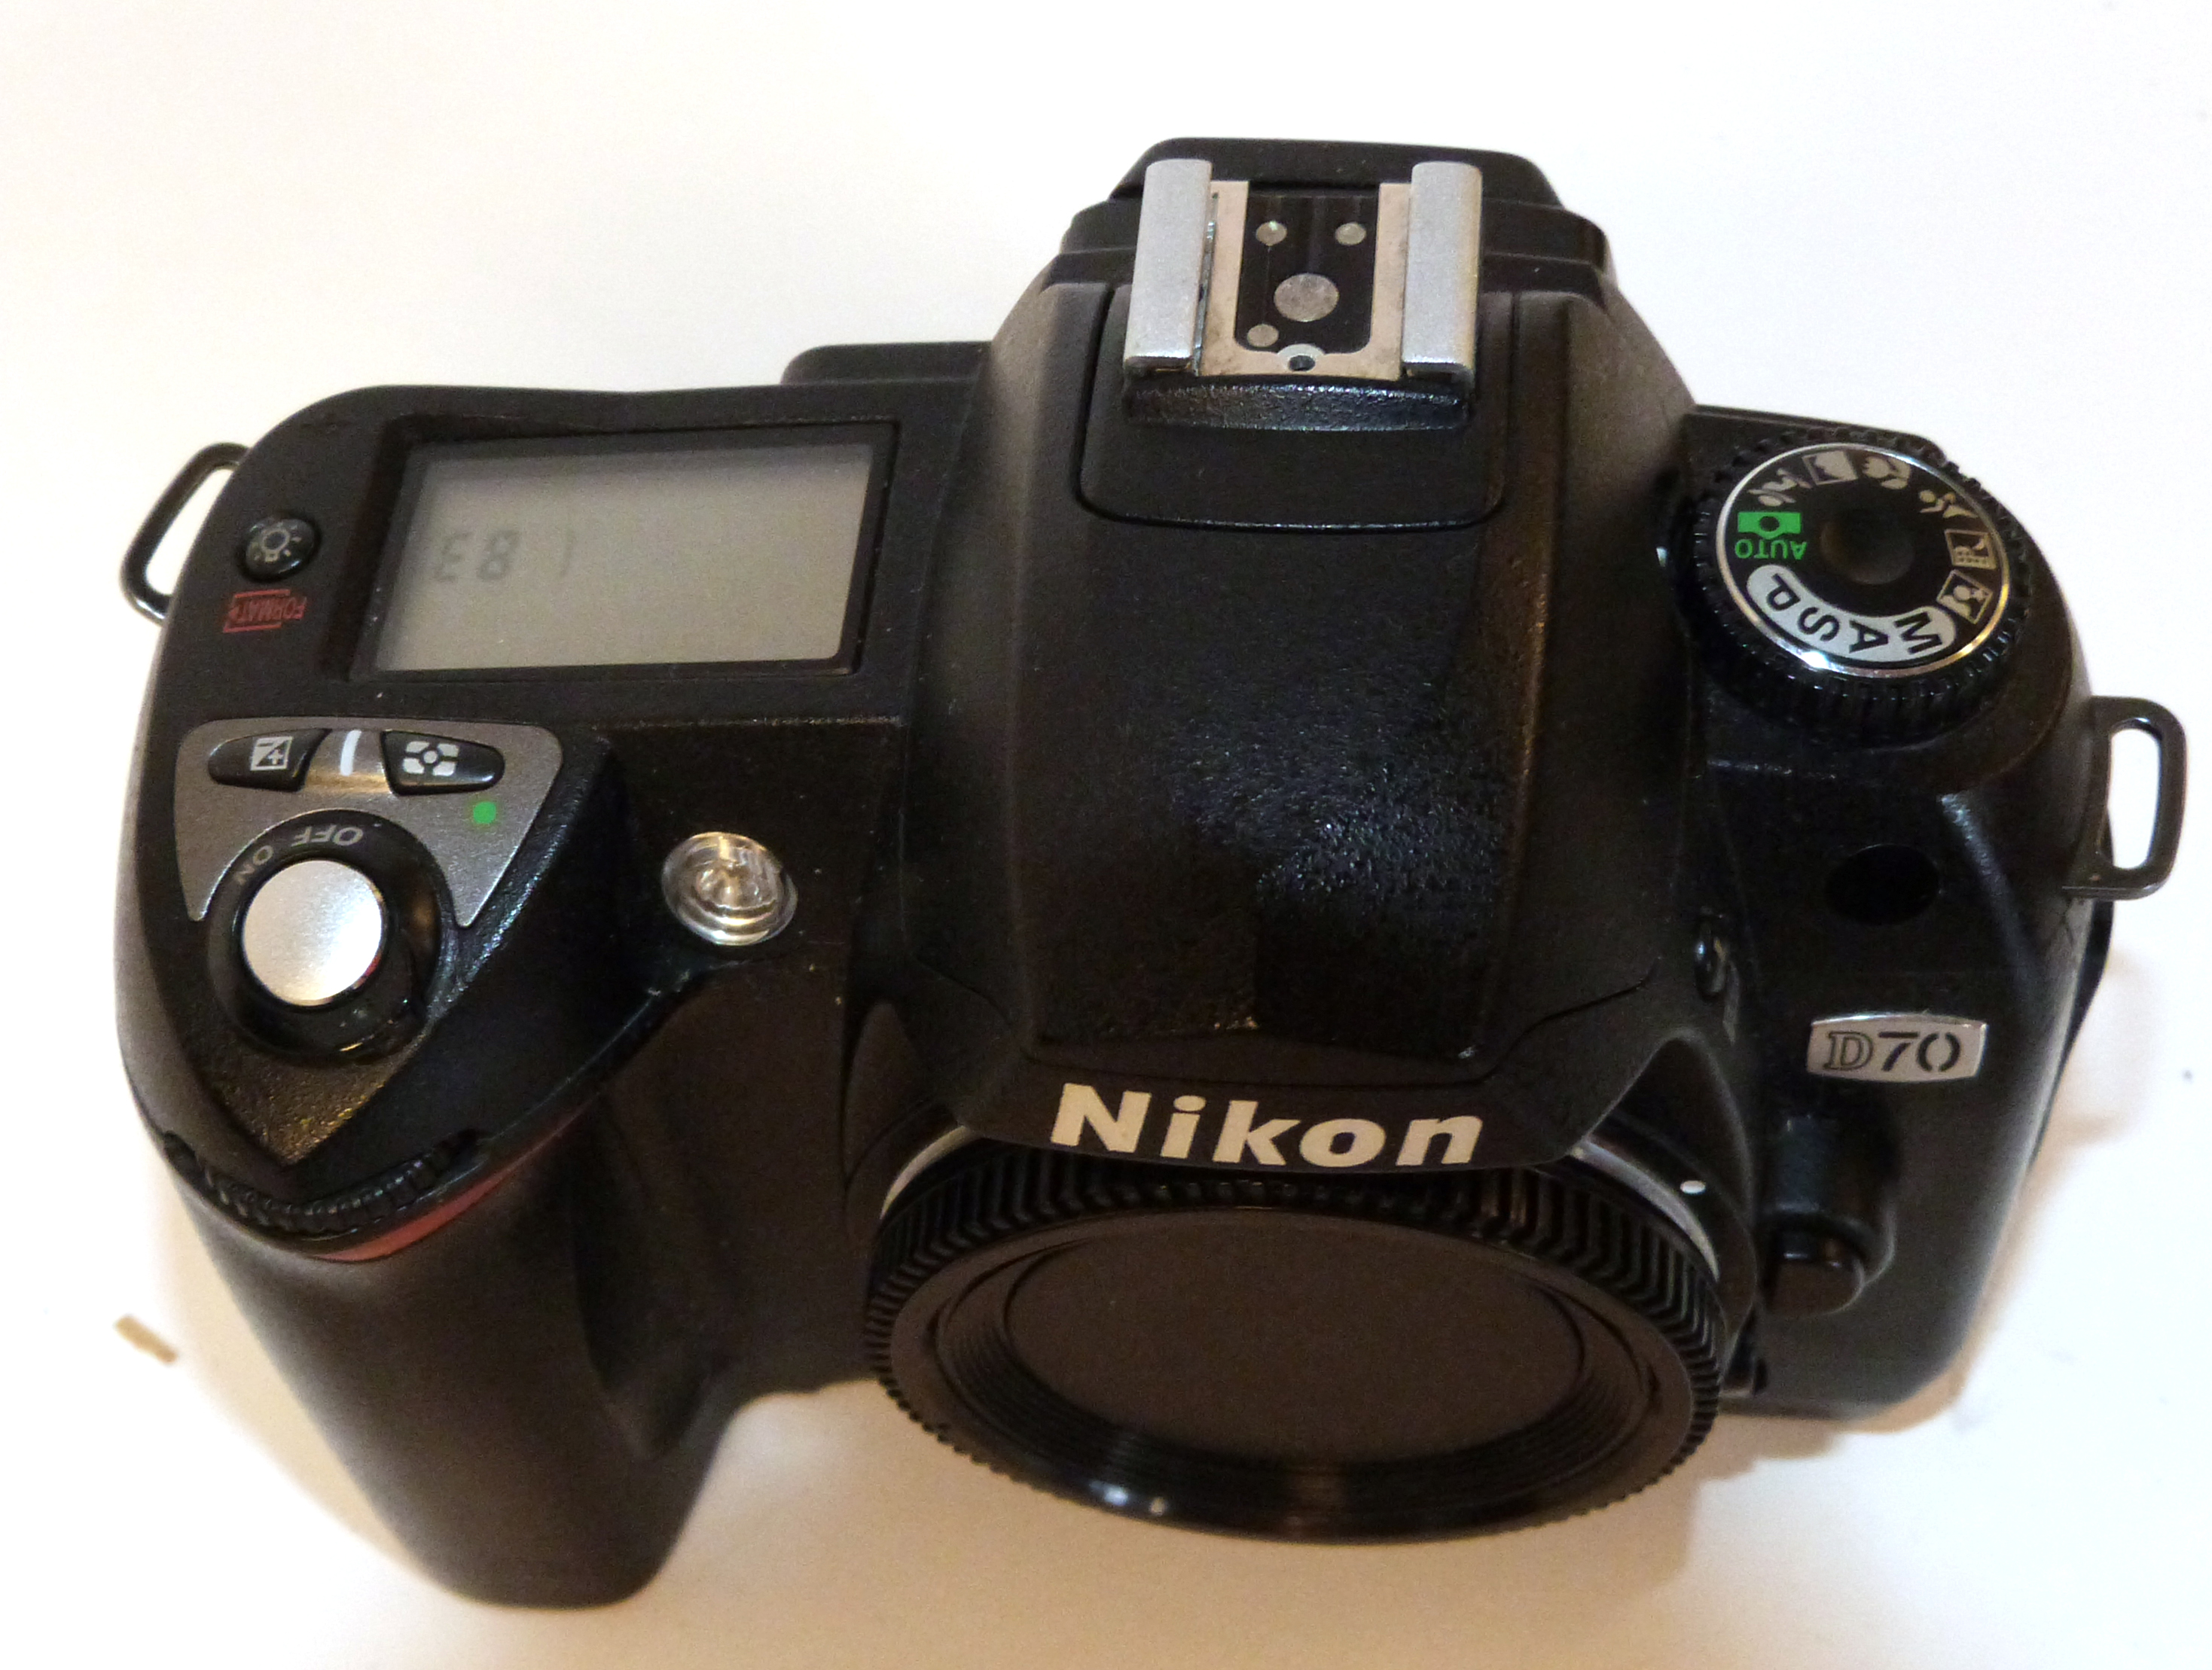 Nikon D70 digital camera together with Nikon AF-S Nikkor 18-70mm lens, charger and fitted case - Image 3 of 6